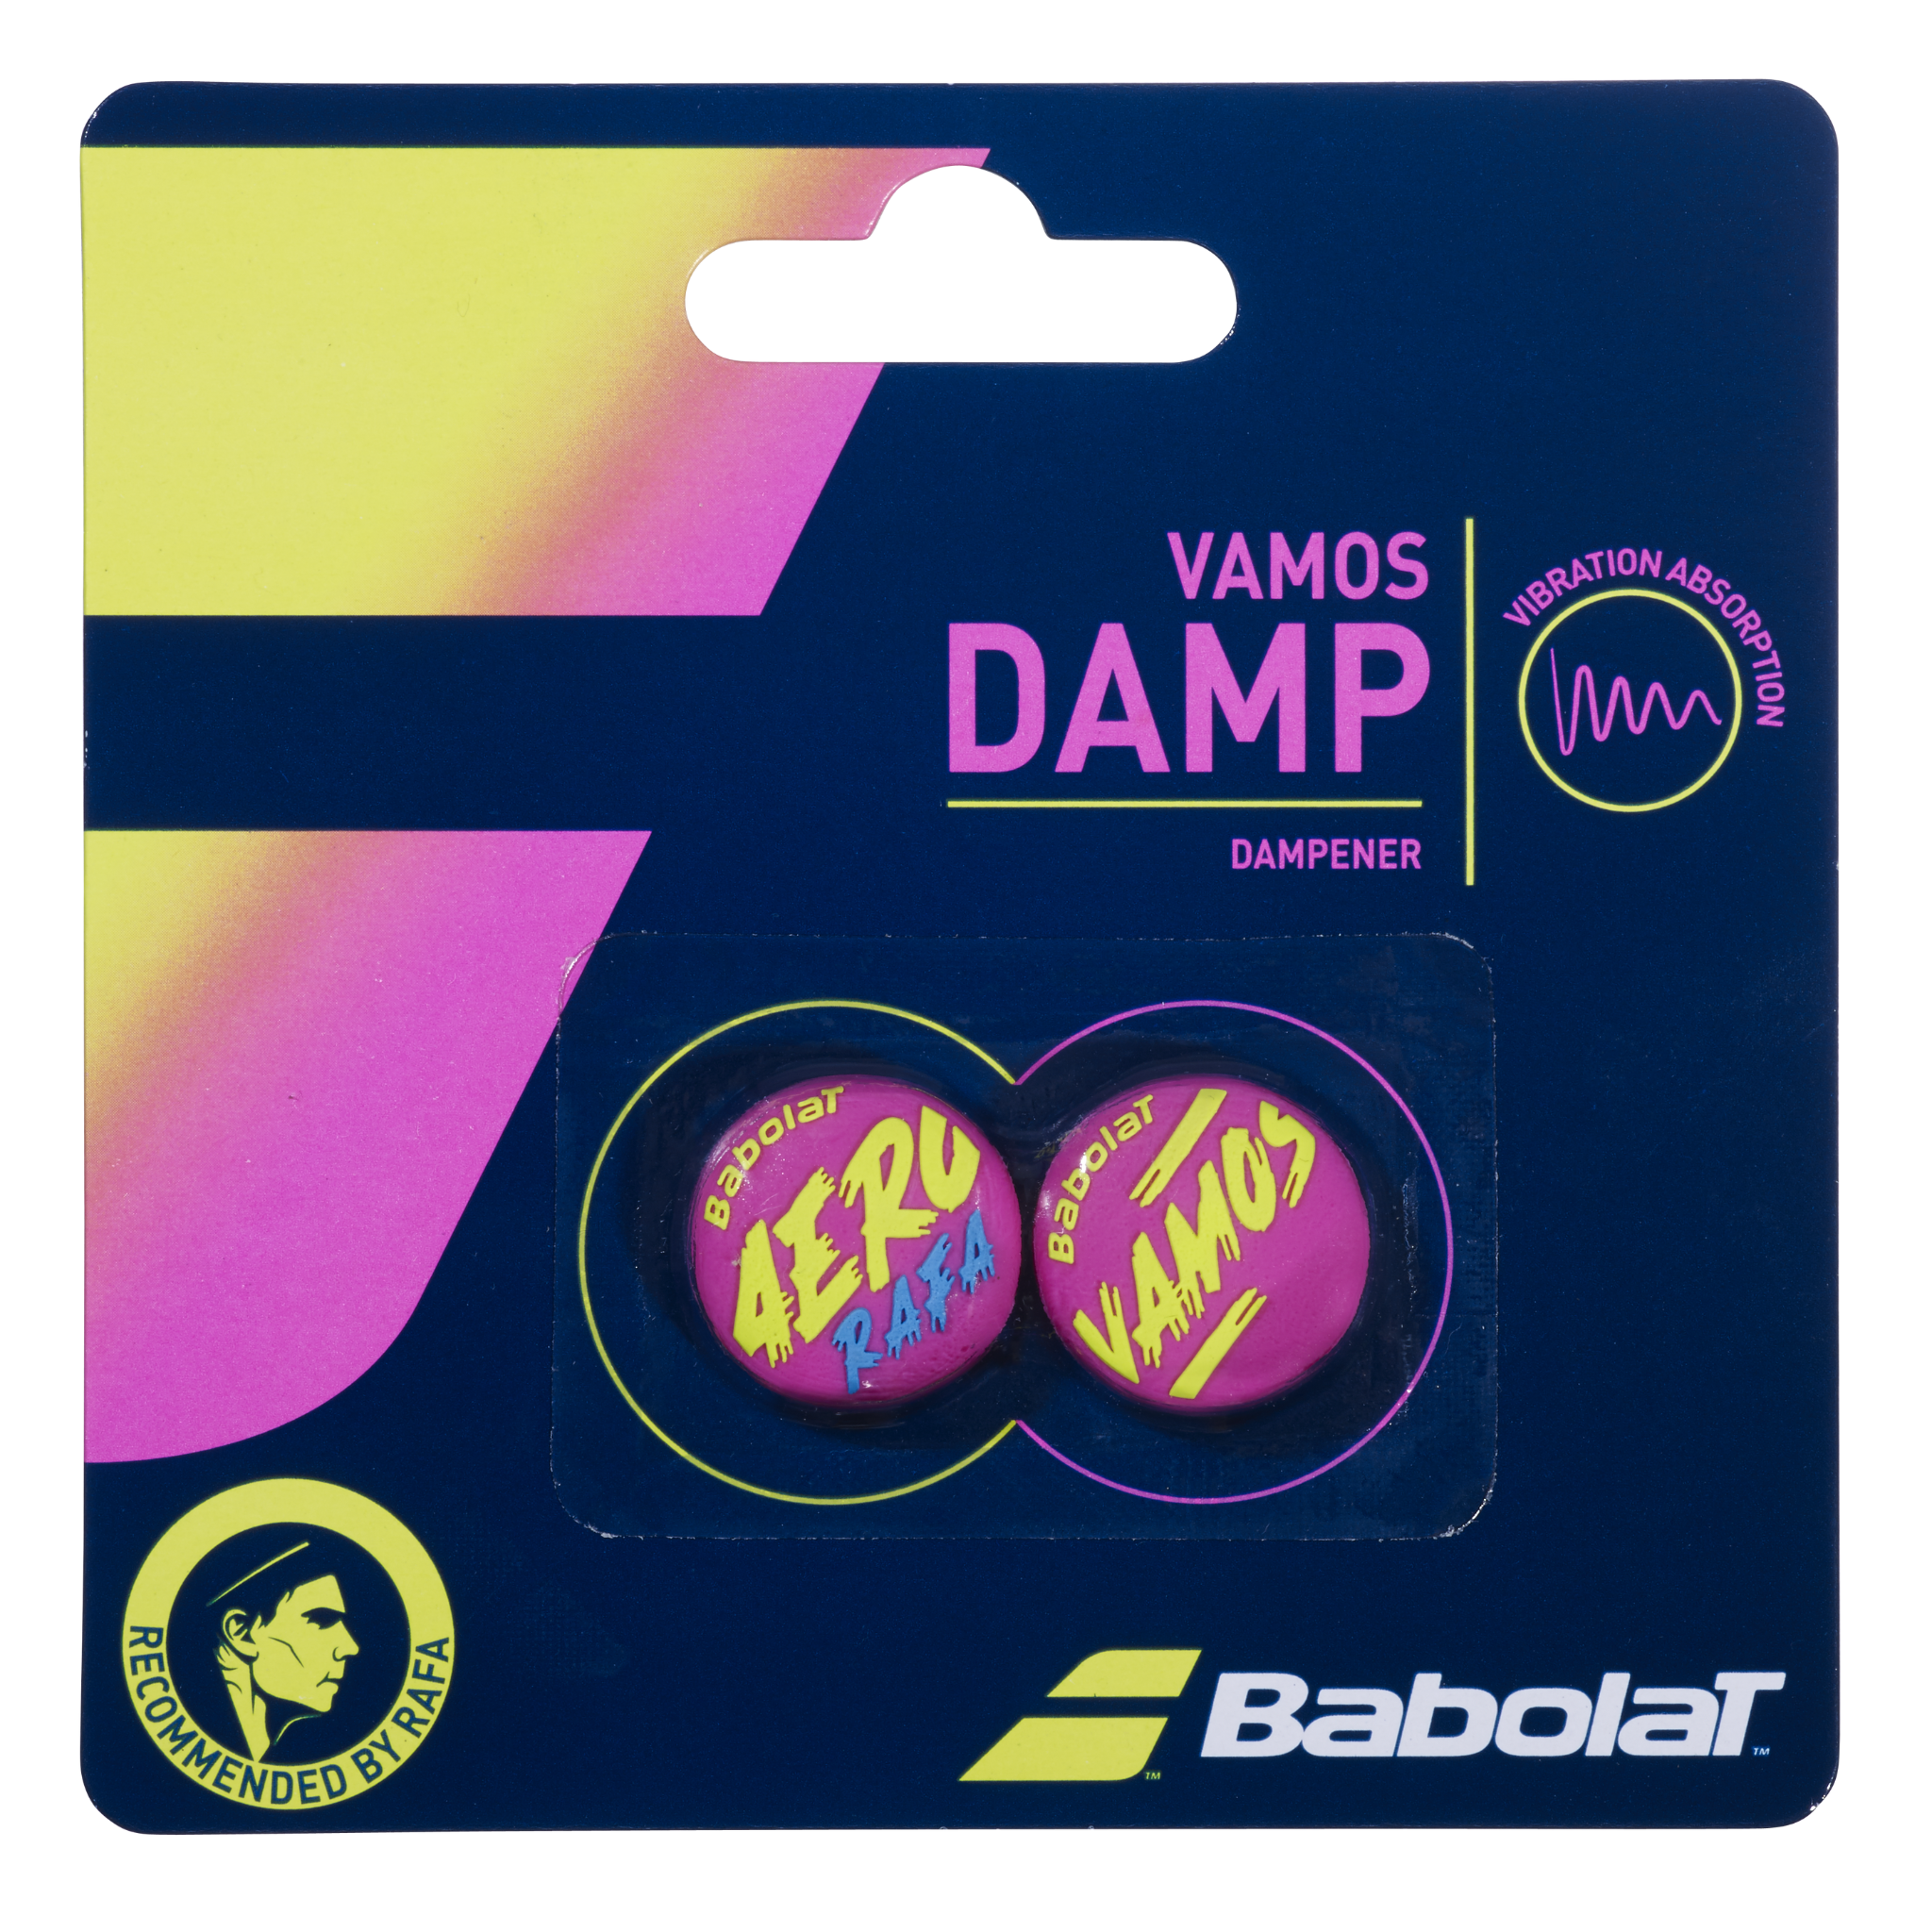 Babolat Vamos Damp Vibration Dampener - 2 Pack (2nd Gen)